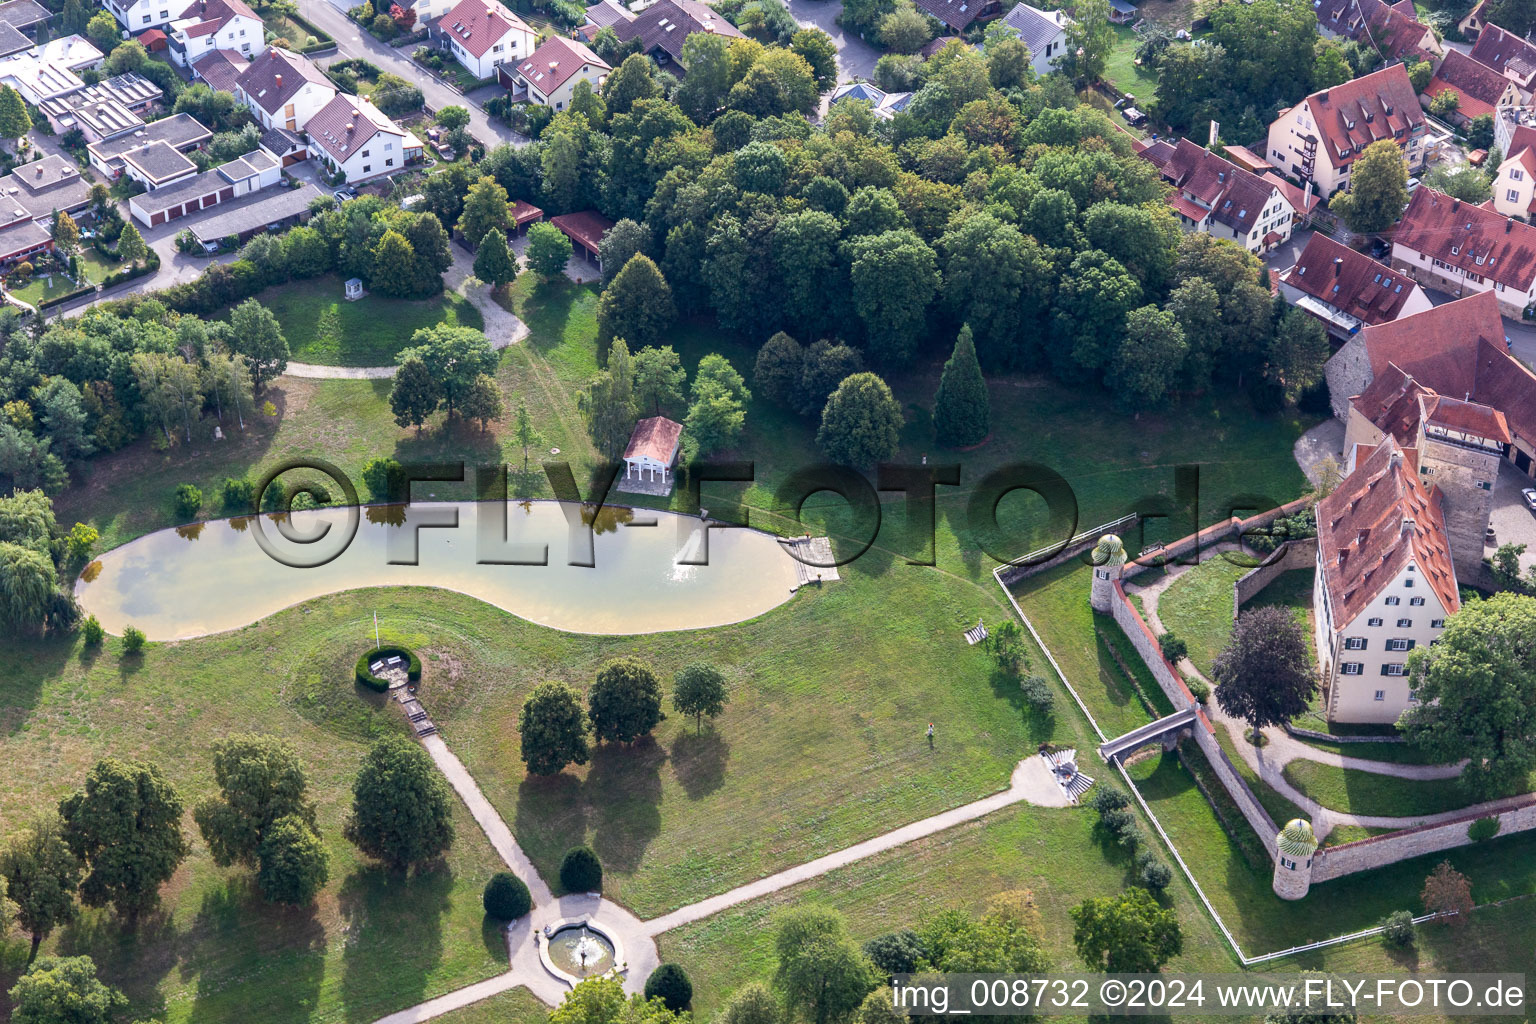 Vue aérienne de Parc du château du château et de l'orangerie du Kilchberg à Tübingen dans le département Bade-Wurtemberg, Allemagne